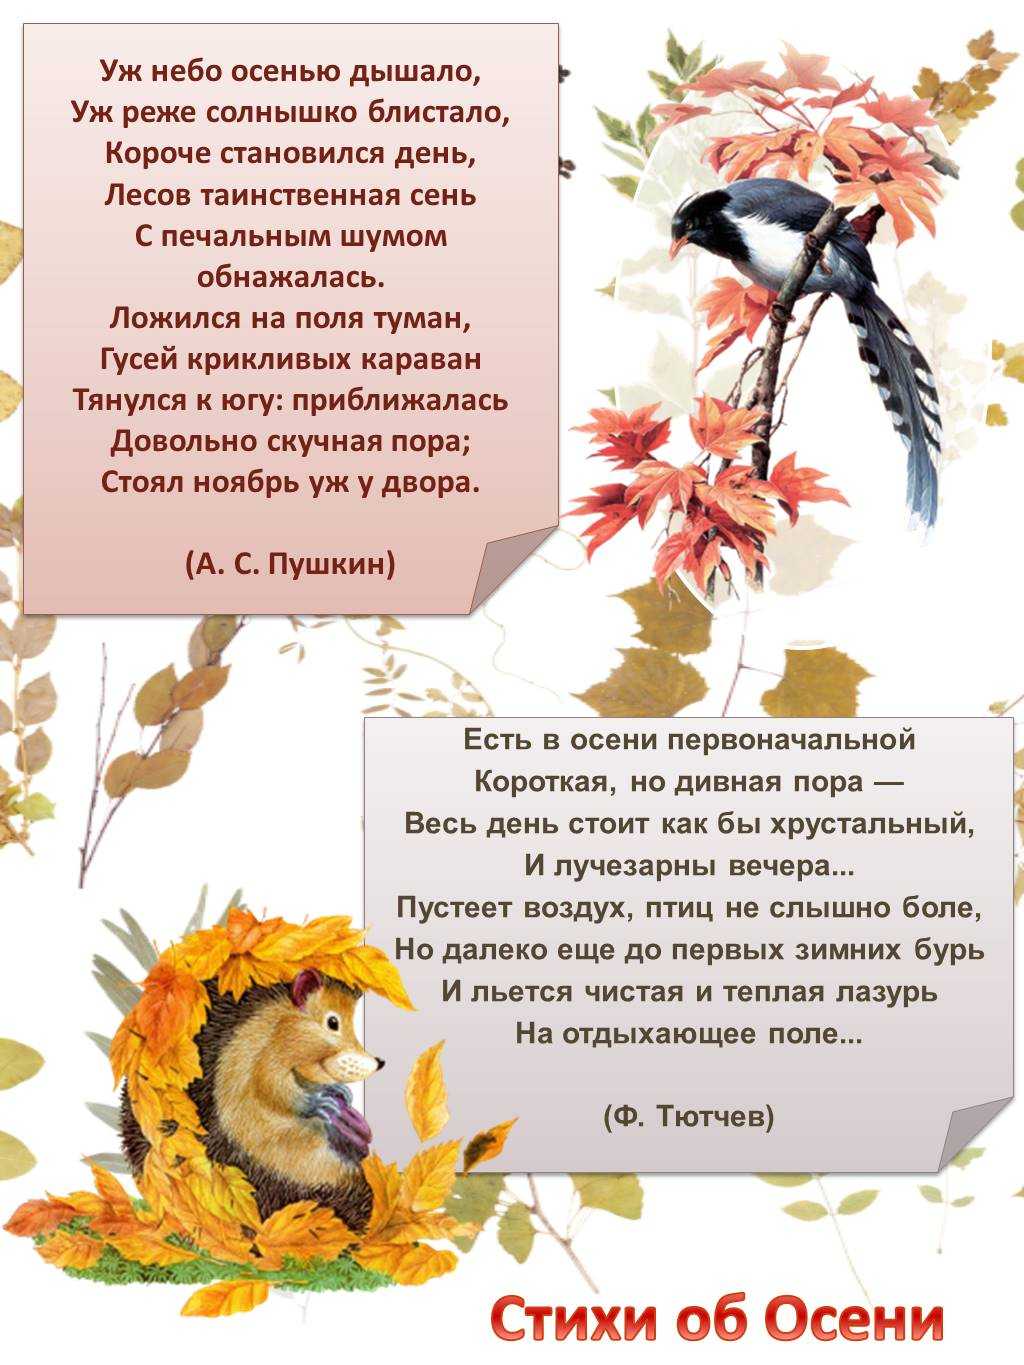 Красивые, интересные стихи про осень на конкурс чтецов для детей